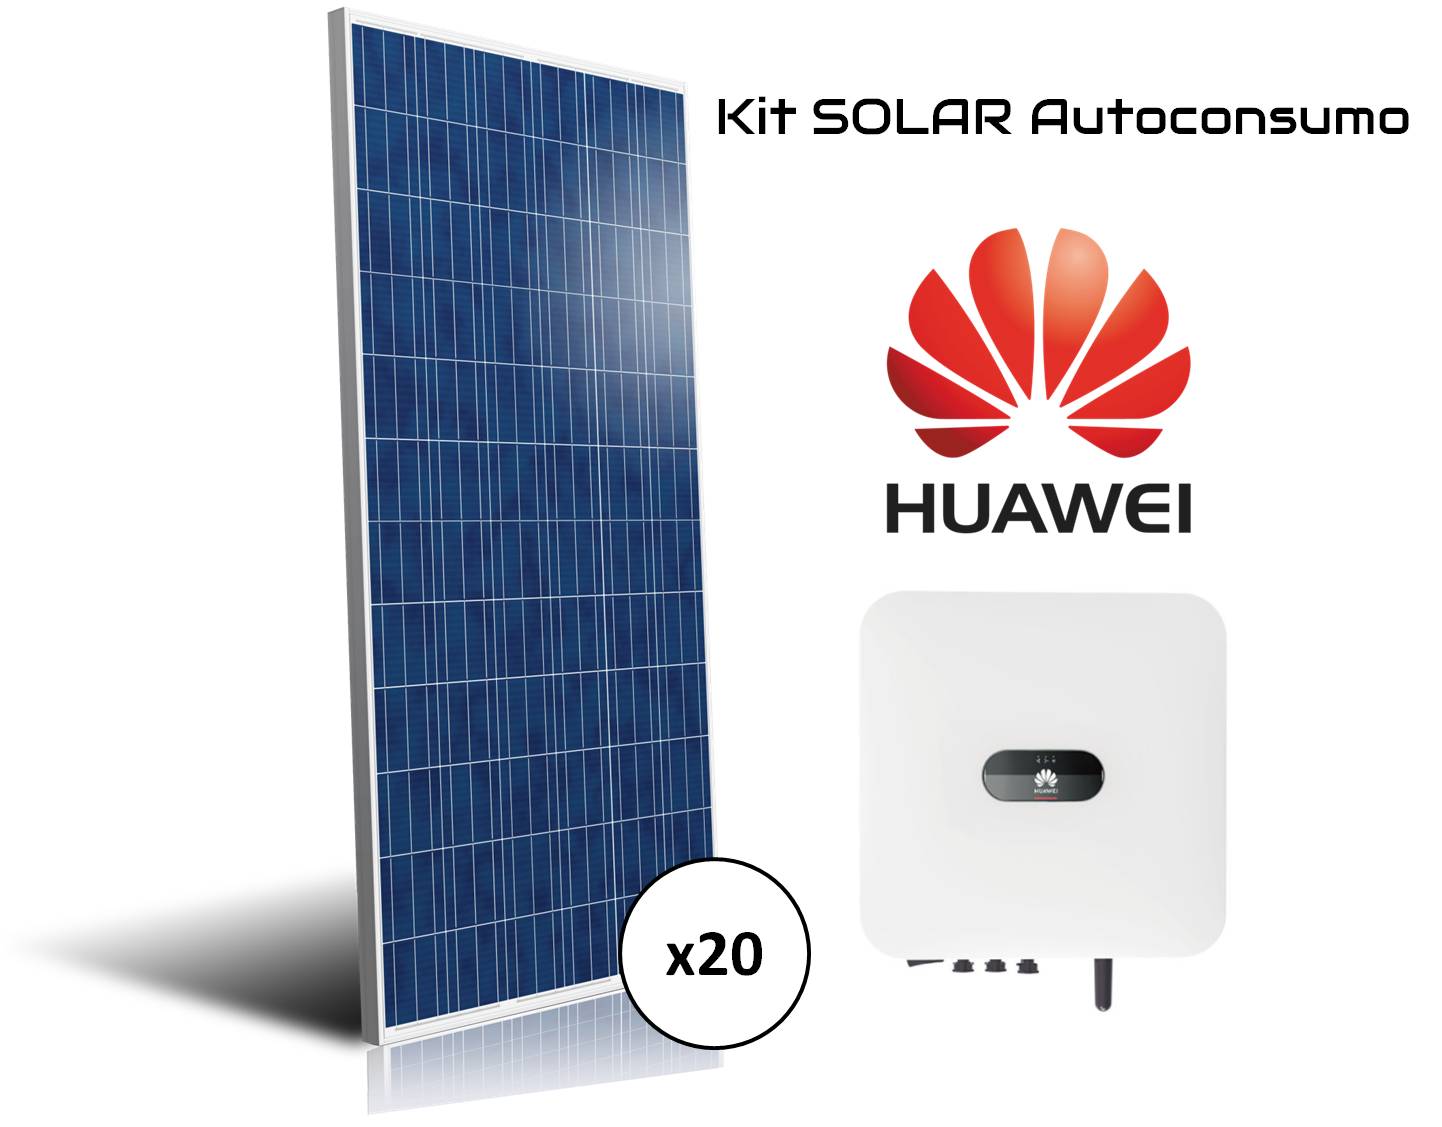 Kit Huawei solar